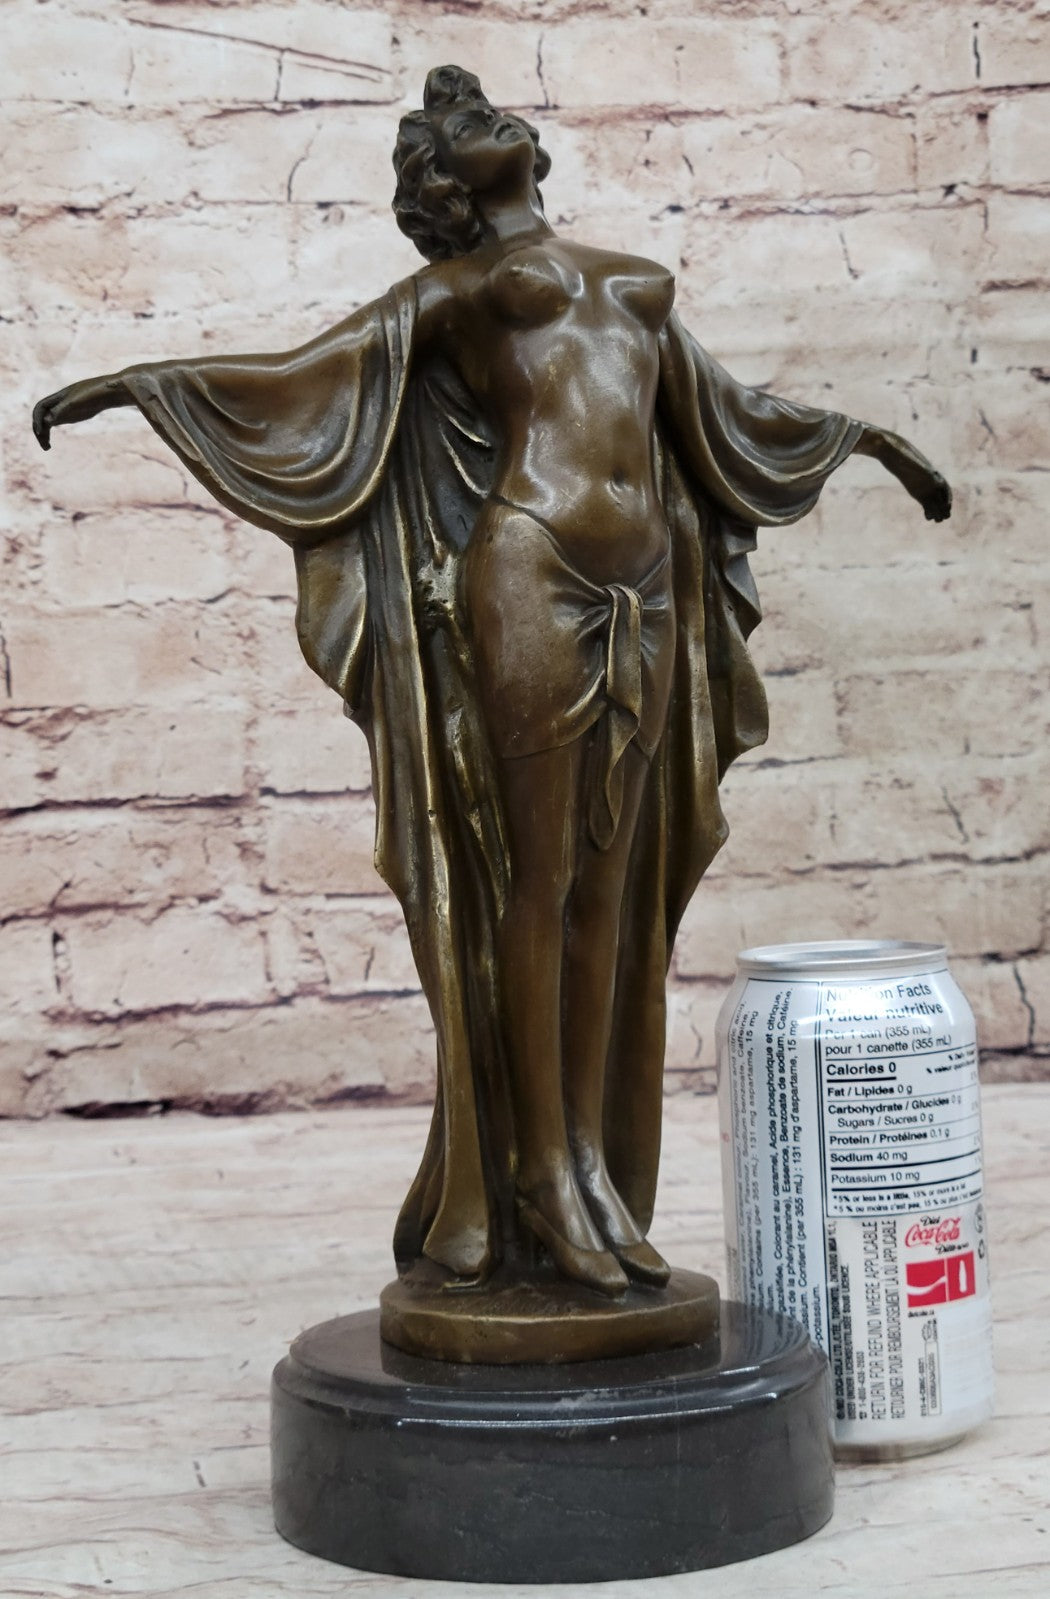 Art Deco Nude Girl Female Classic Bronze Sculpture Figurine Marble Base Figure